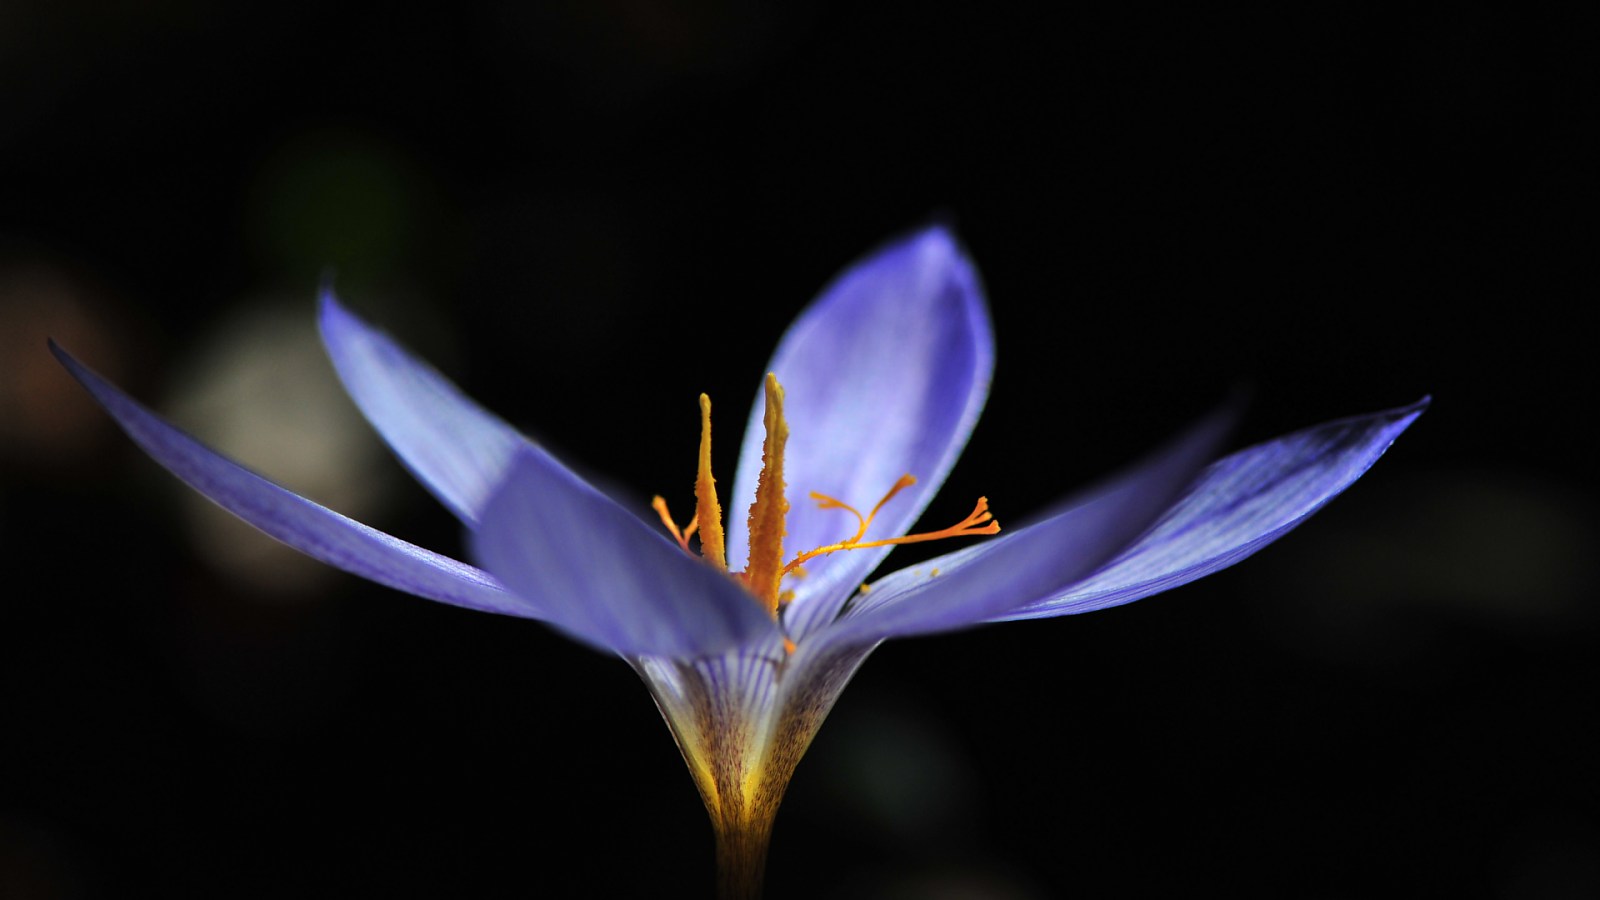 عکس گل زعفران با کیفیت بالا